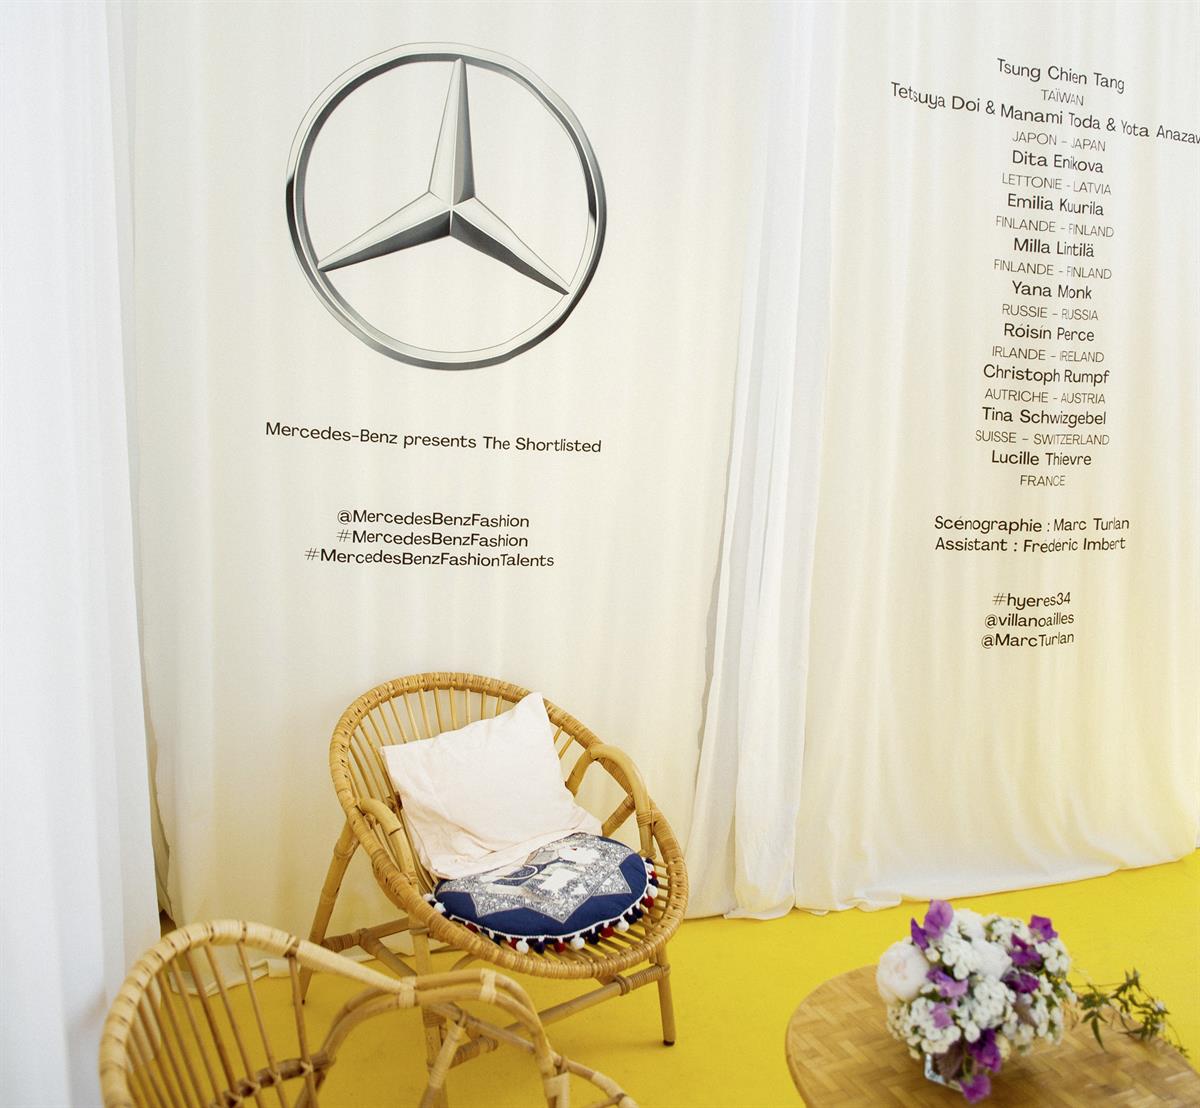 Mercedes-Benz präsentiert österreichischen Nachwuchs-designer Christoph Rumpf bei der Berlin Fashion Week 